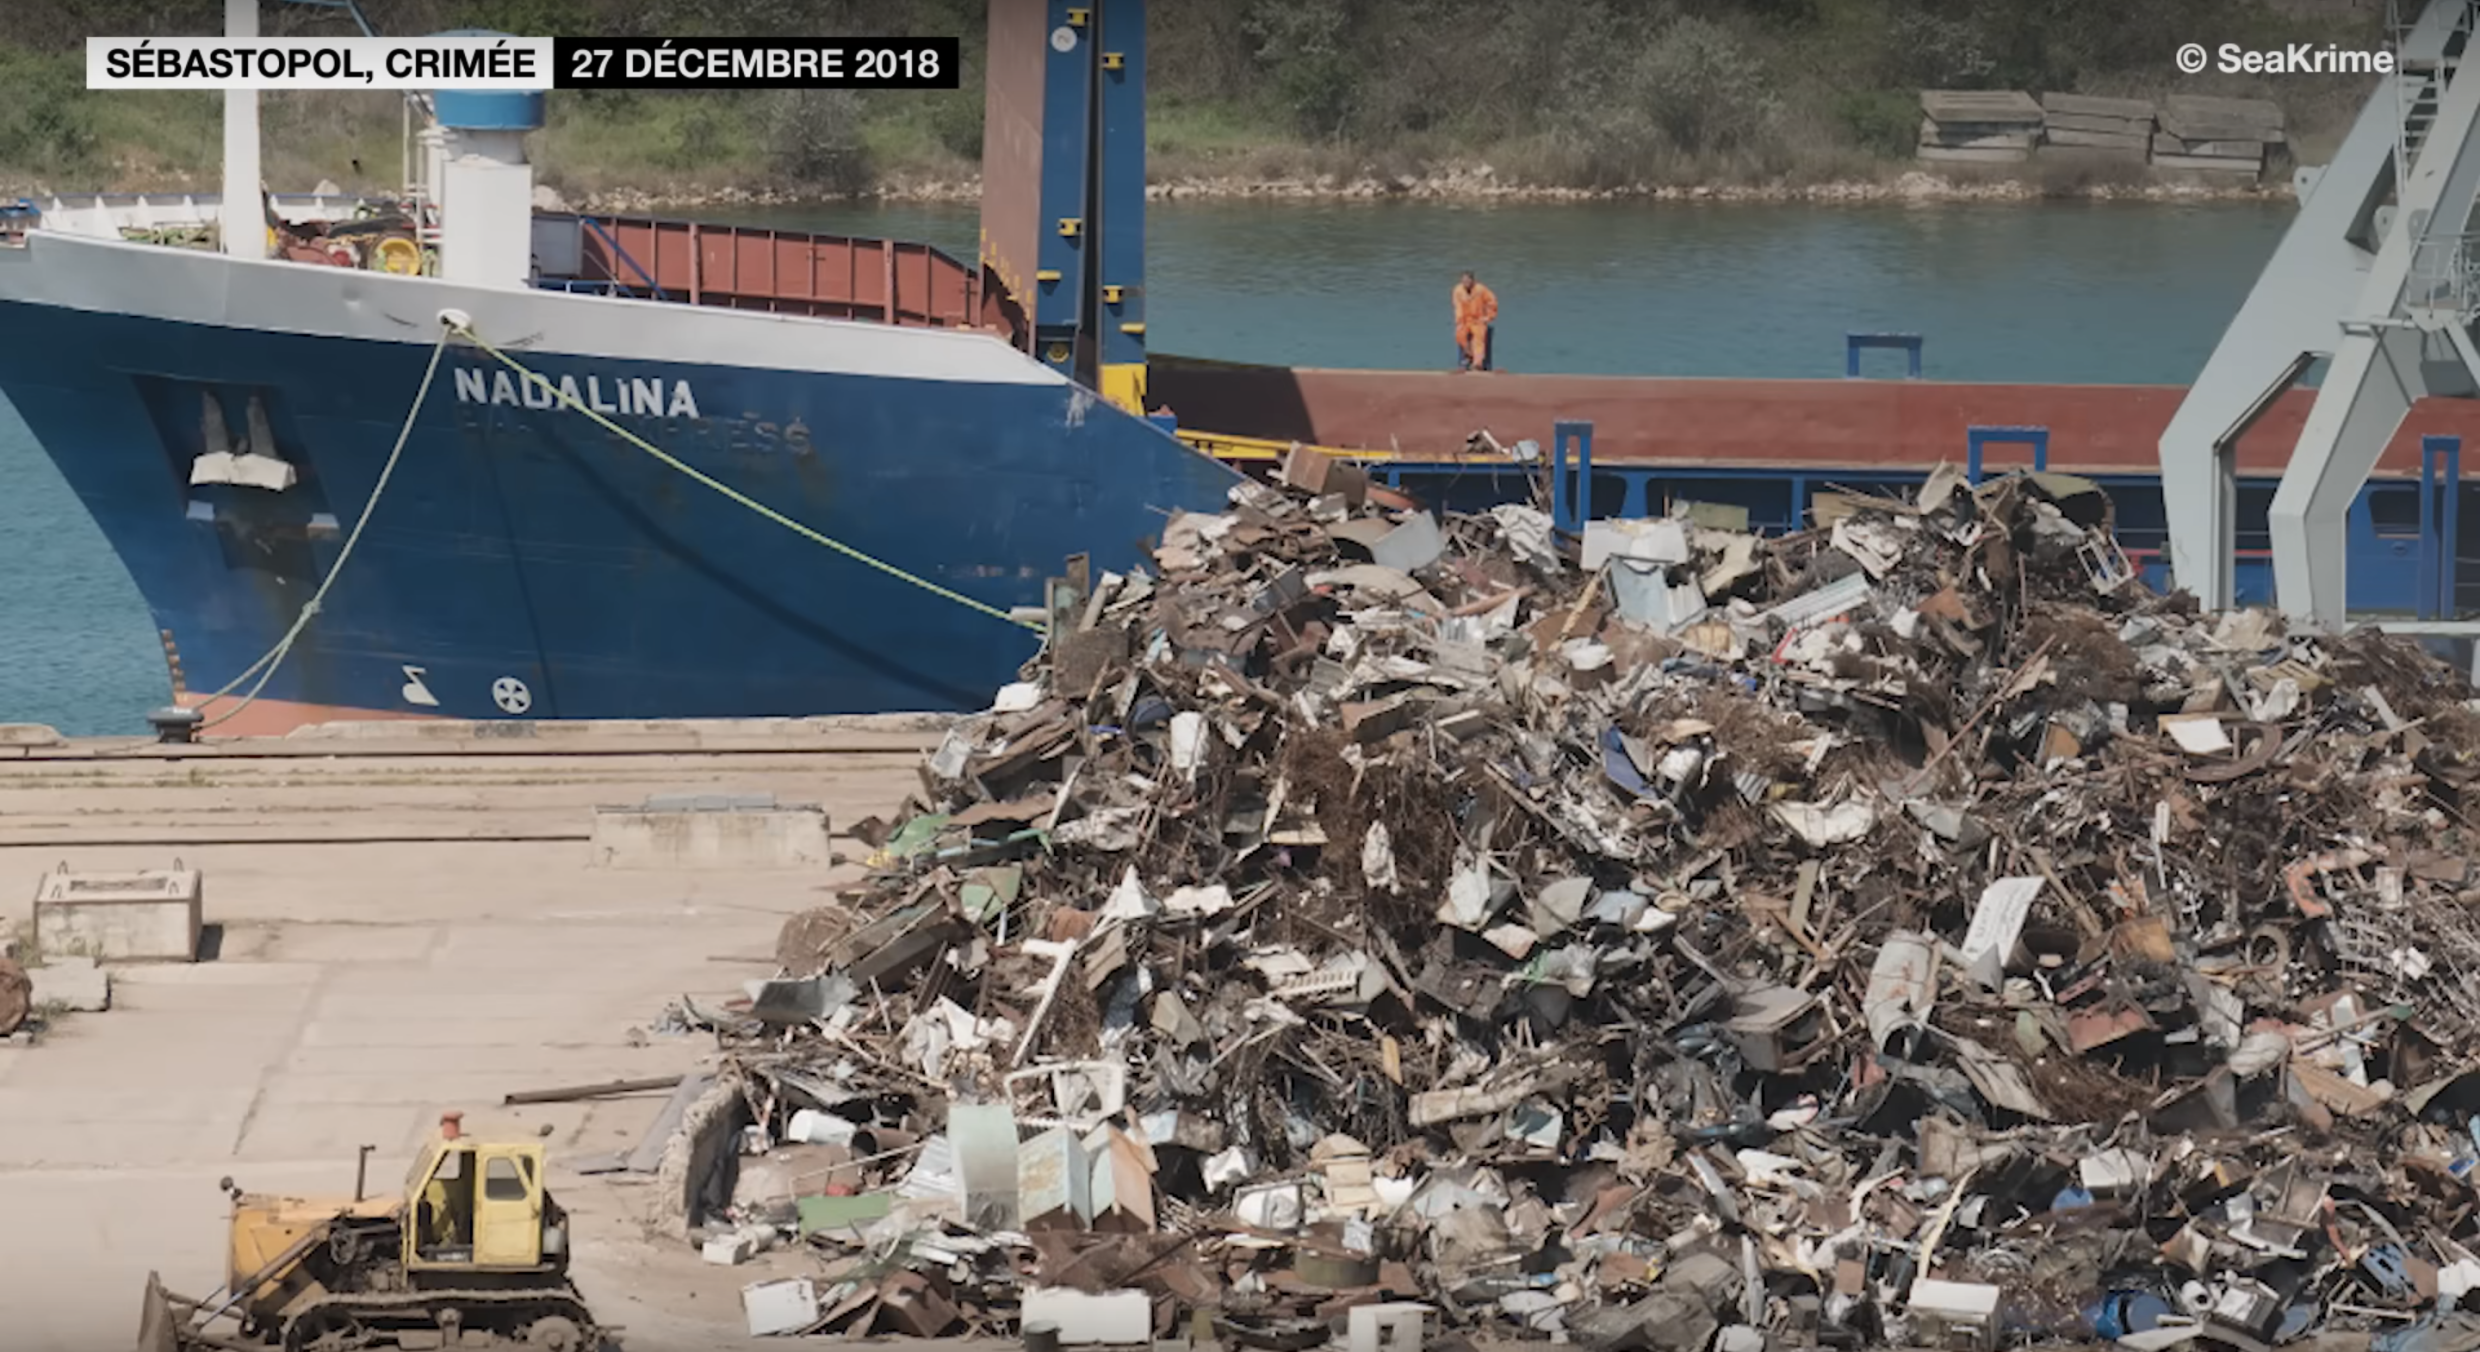 Die Nadalina legte am 27. Dezember 2018 im Hafen von Sewastopol auf der Krim an und war mit einer Ladung Altmetall beladen.